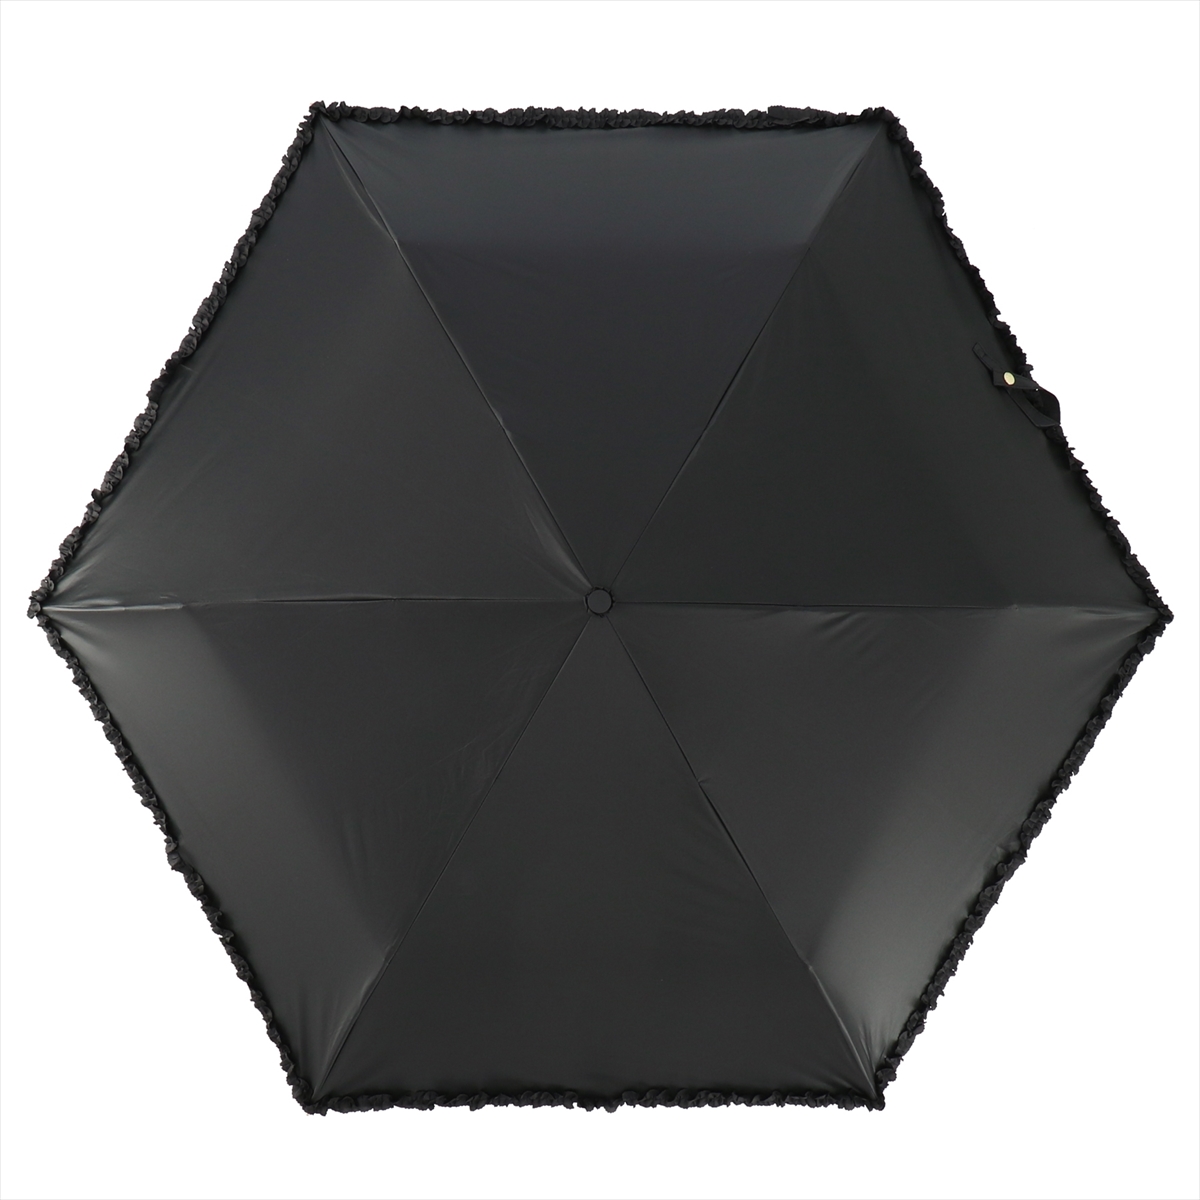 公式 日傘 レディース 晴雨兼用 折りたたみ傘 遮光 遮熱 フリル スレンダー コンパクト